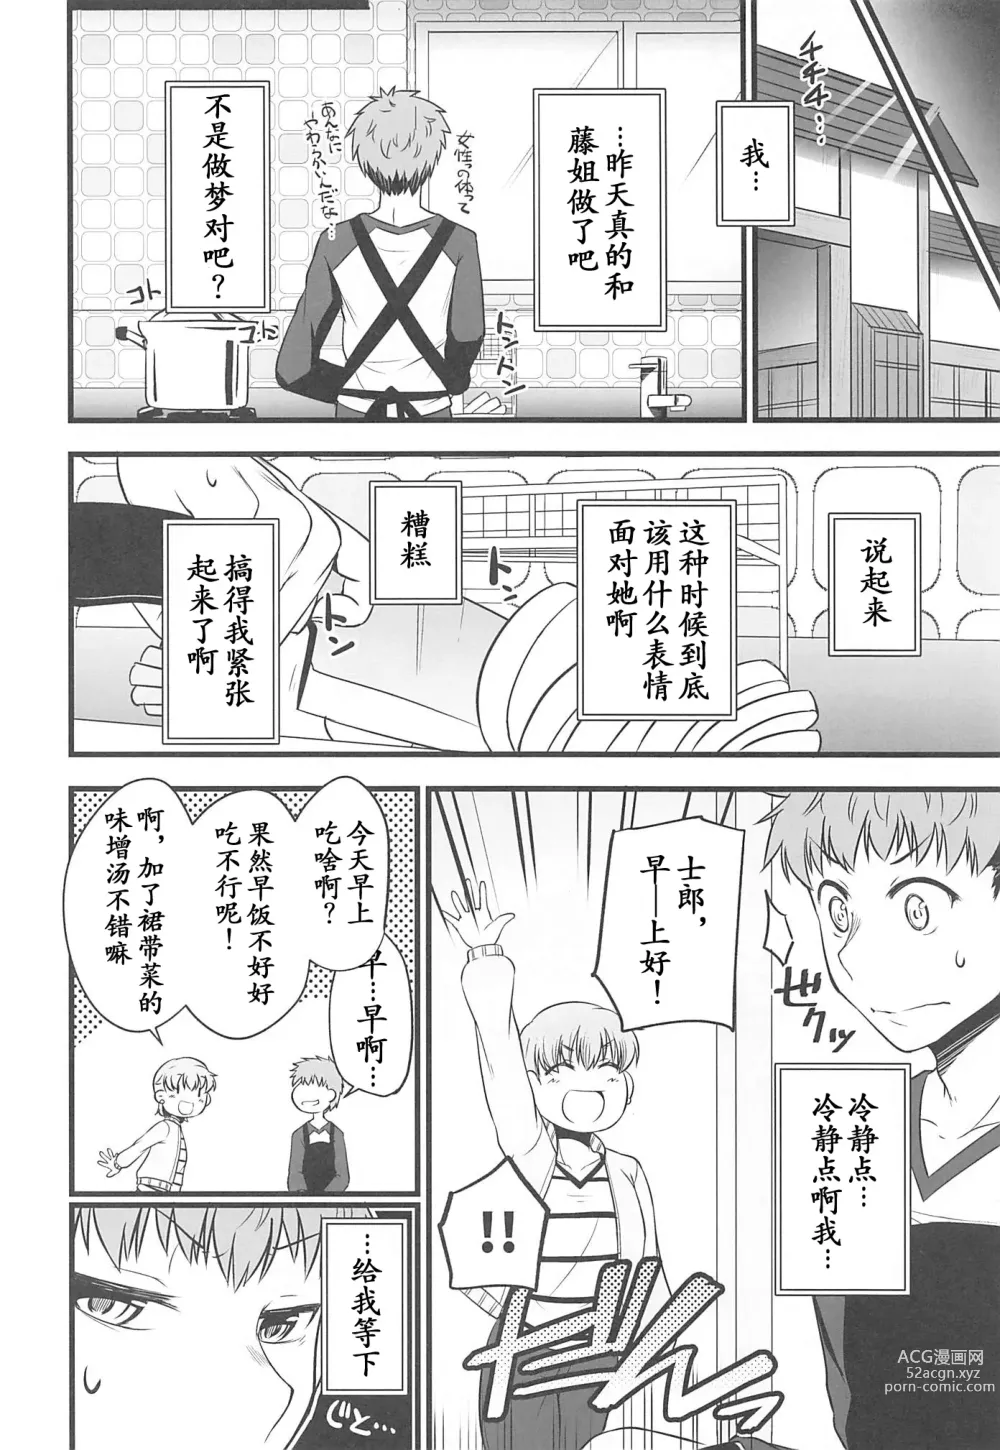 Page 26 of doujinshi Yappari Toradoshi Damono